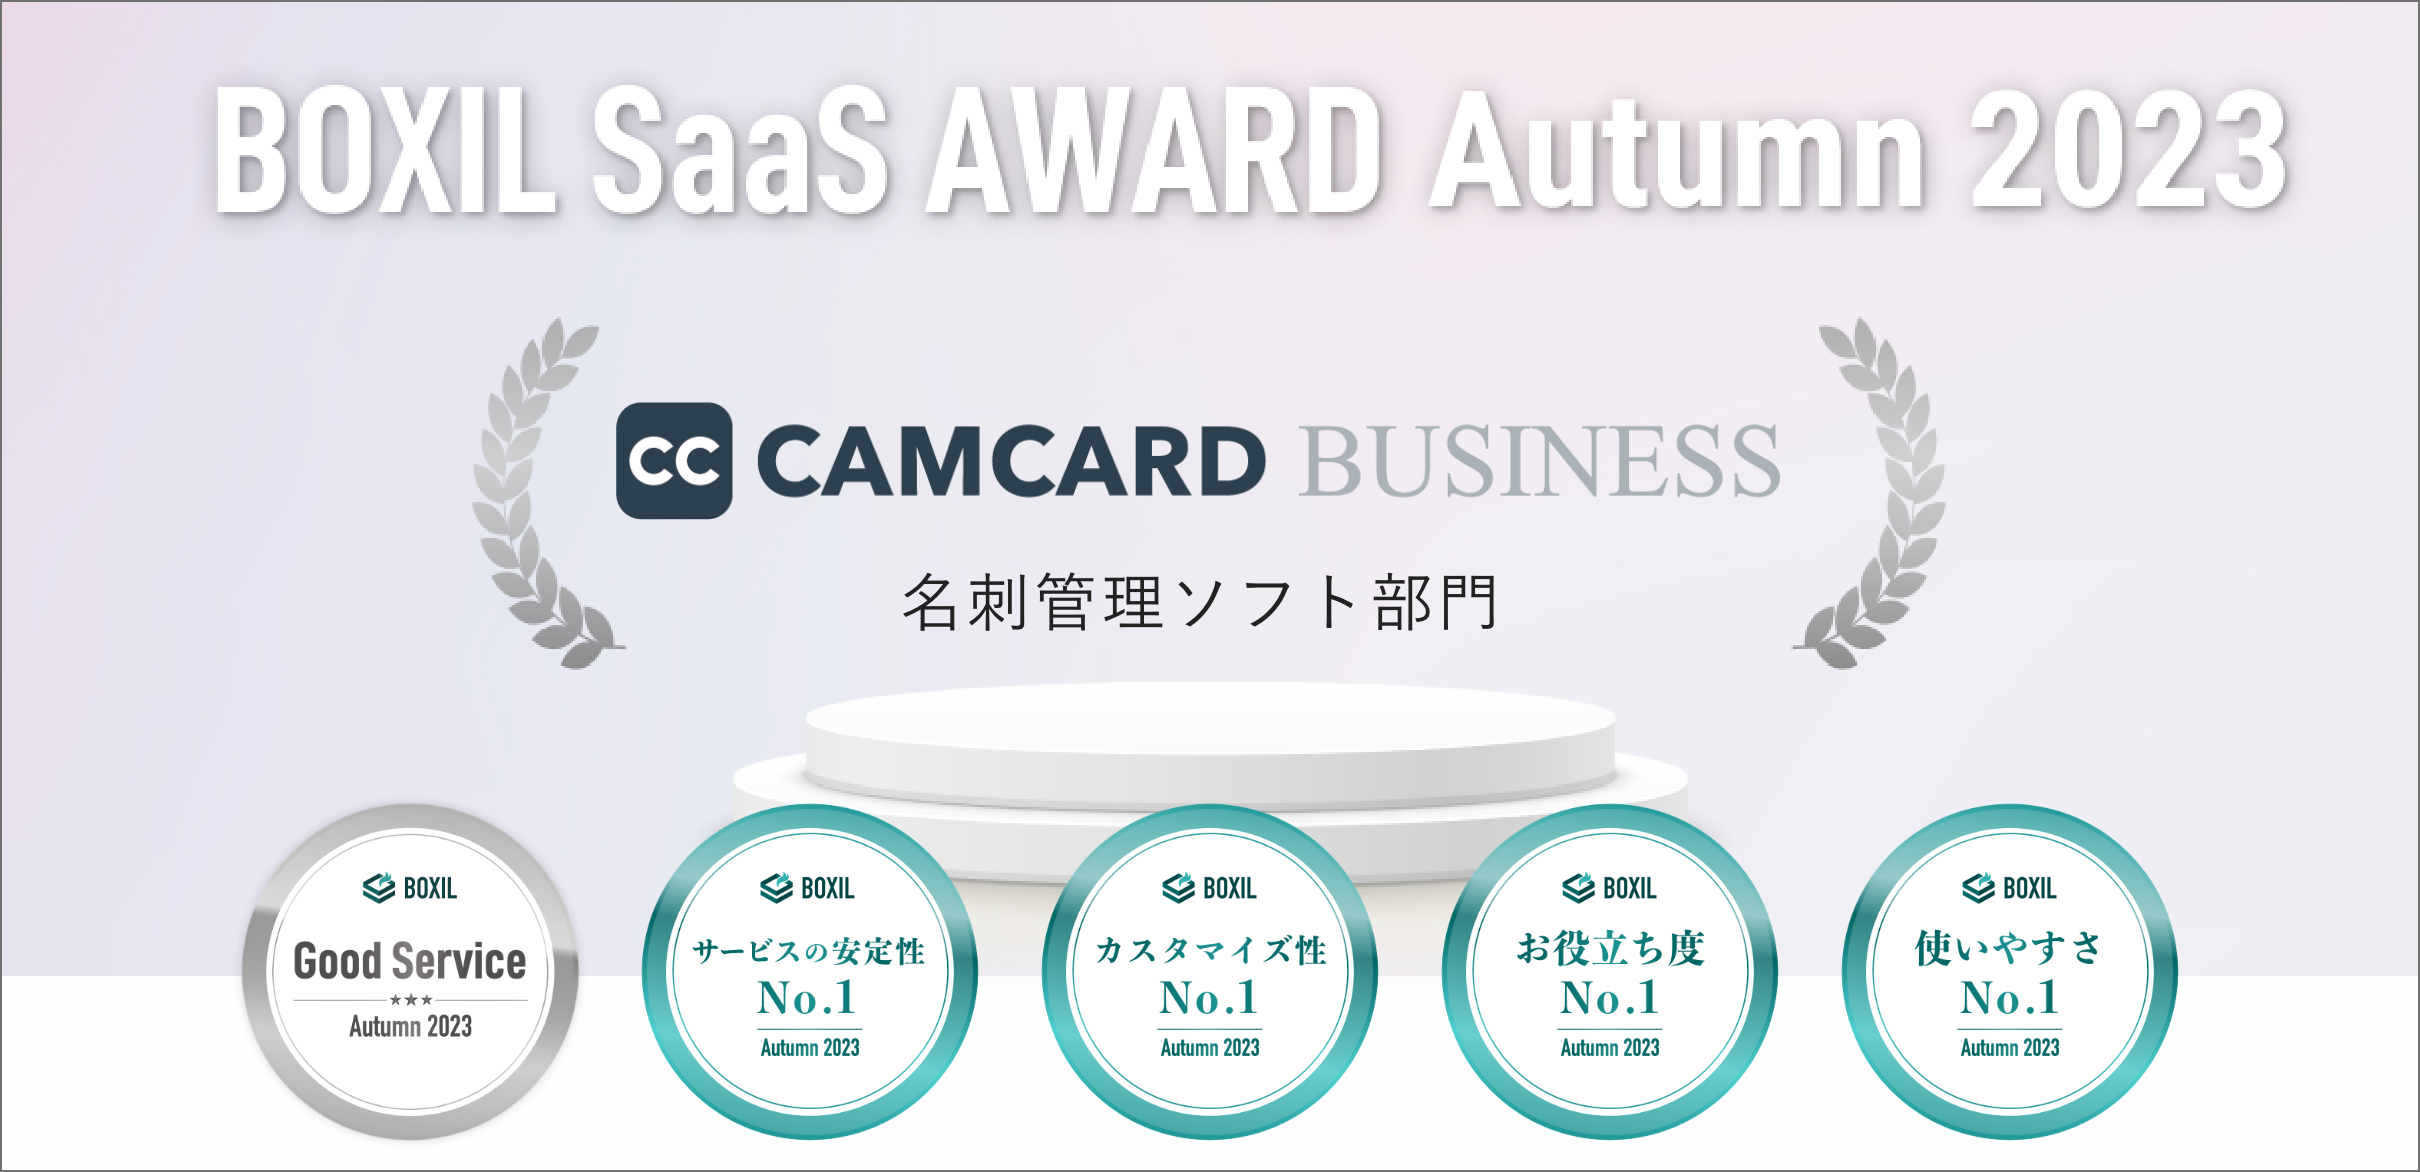 CAMCARD BUSINESS、「BOXIL SaaS AWARD Autumn 2023」名刺管理ソフト部門で「Go